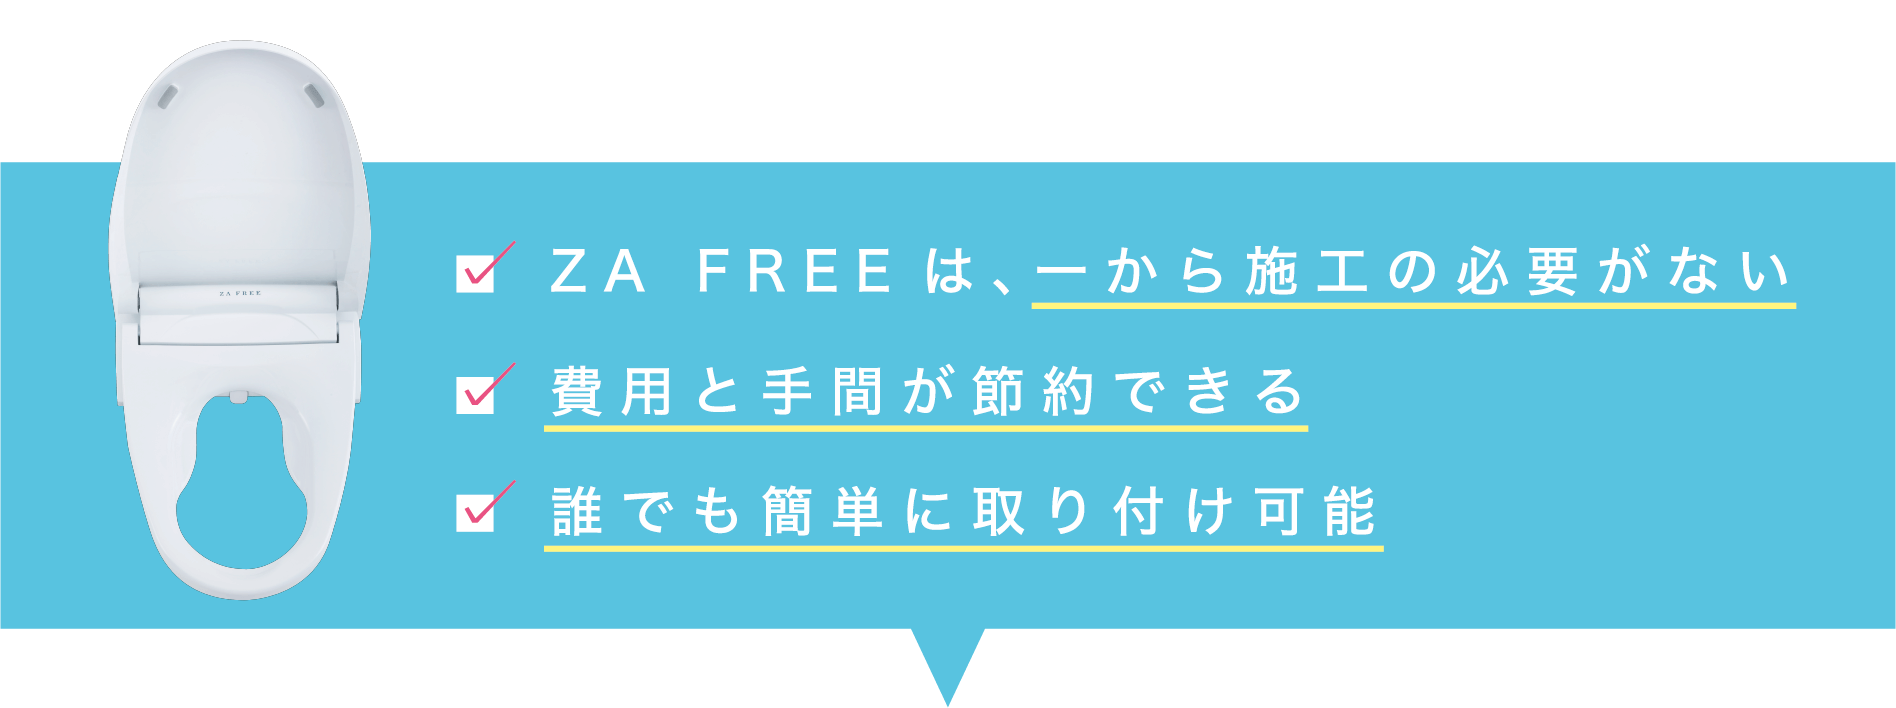 ZA FREEは、一から施工の必要がない、費用・手間が節約できる、誰でも簡単に取り付け可能